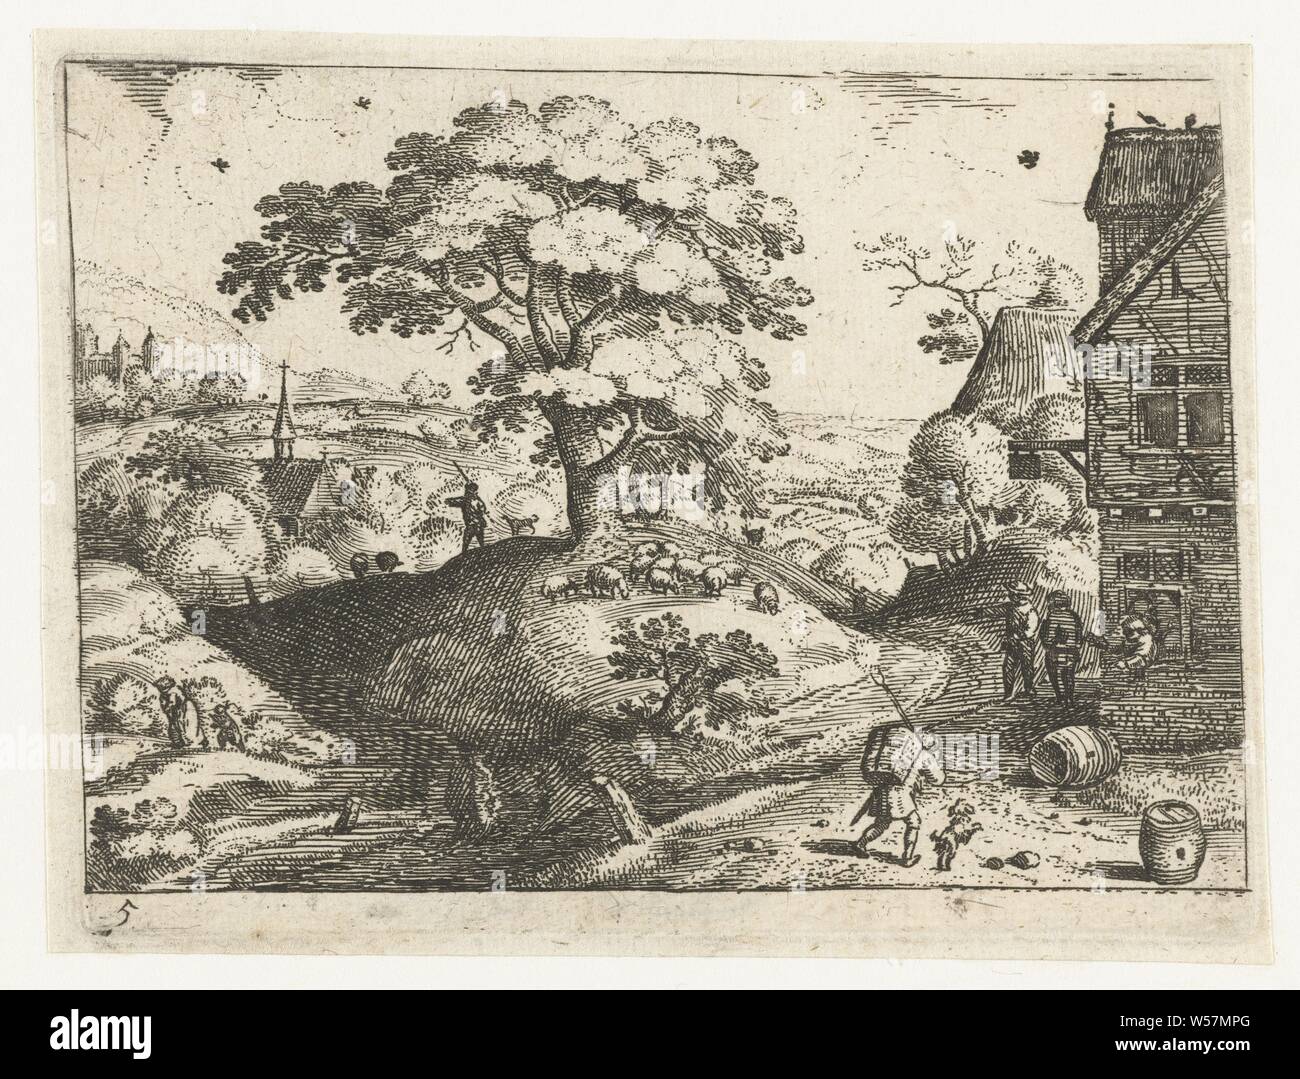 Landschaft mit Traveler Inn sechs Landschaften mit Reisende (Titel der Serie), in einer hügeligen Landschaft ein Reisender (ein Mann mit einem Korb auf dem Rücken) geht mit einem Hund zu einem Gasthaus. Dieser Ausdruck ist Teil einer Serie von sechs Landschaften mit Reisende., Jacob Savery (I), 1584-1603 und/oder nach 1639, Papier, Gravur, H 93 mm x B 122 mm Stockfoto